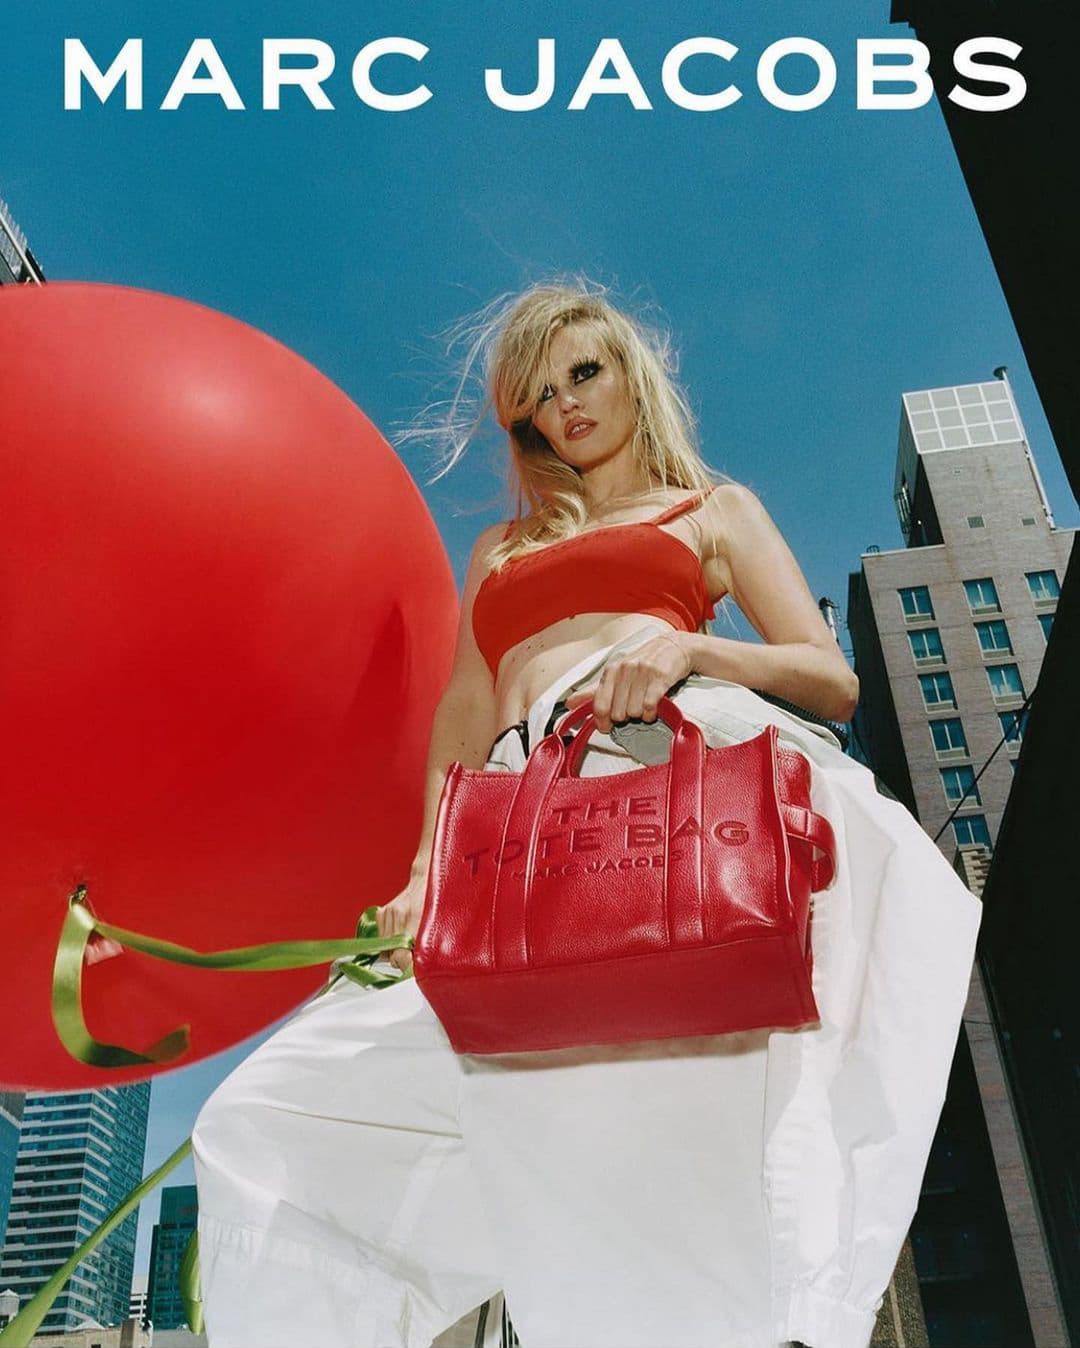 Marc Jacobs Pillow Bag Campaign (Marc Jacobs)